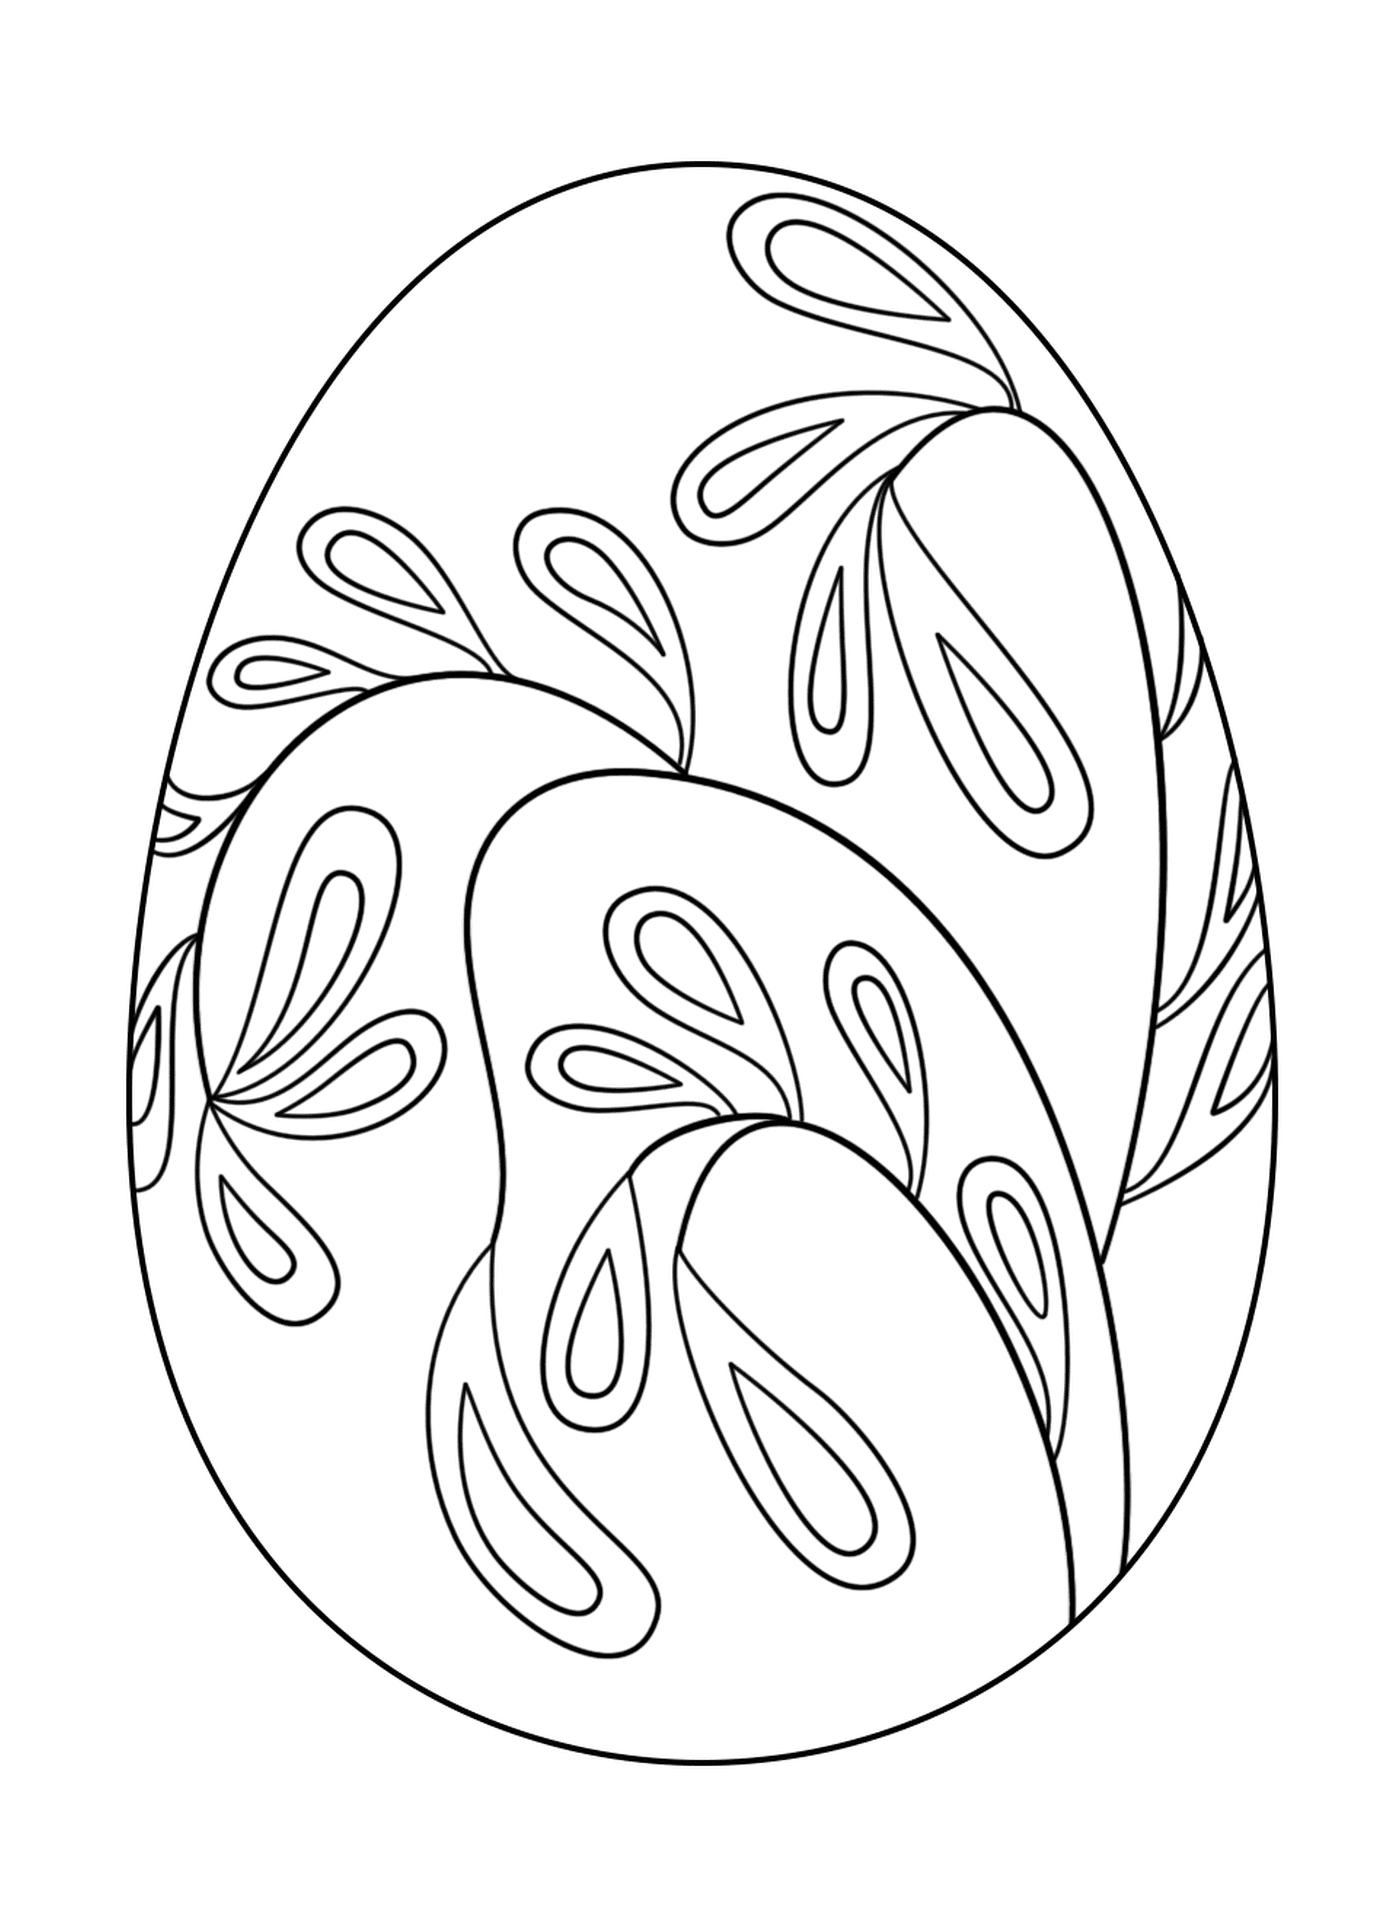  Huevo de Pascua con motivo floral 